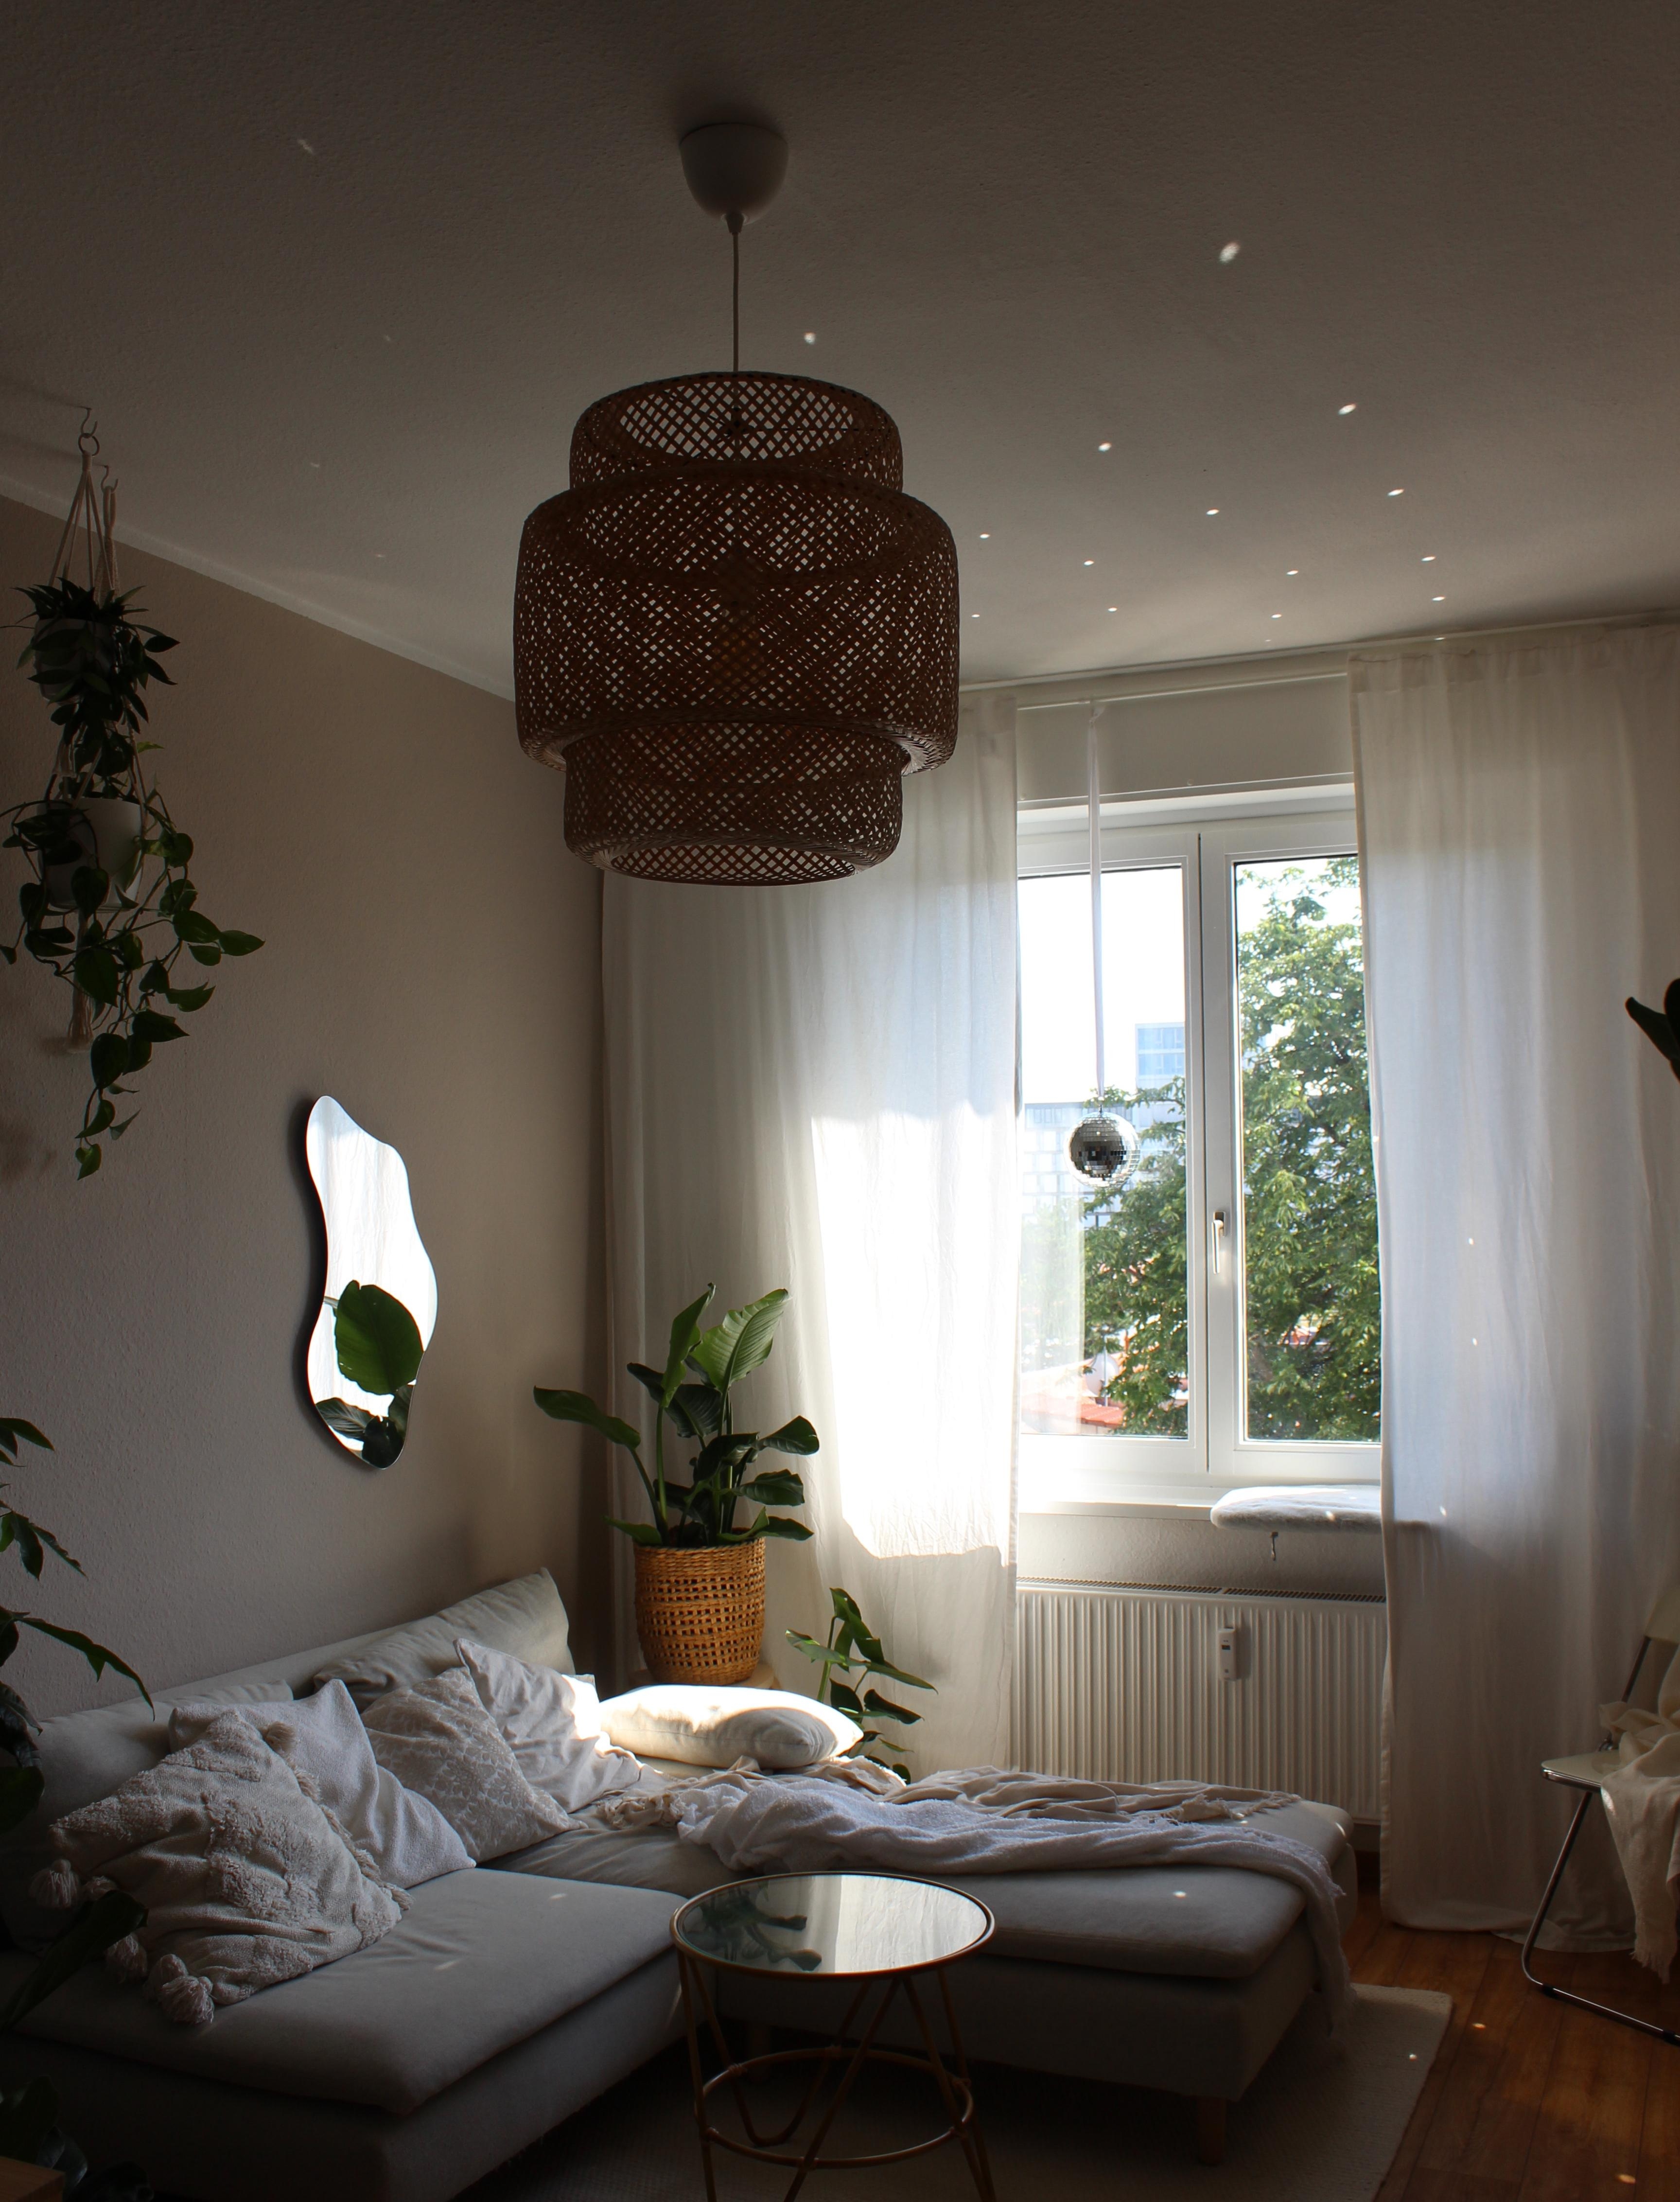 #wohnzimmer #lampe #beige #spiegel #sofa #sofaecke #pflanzen